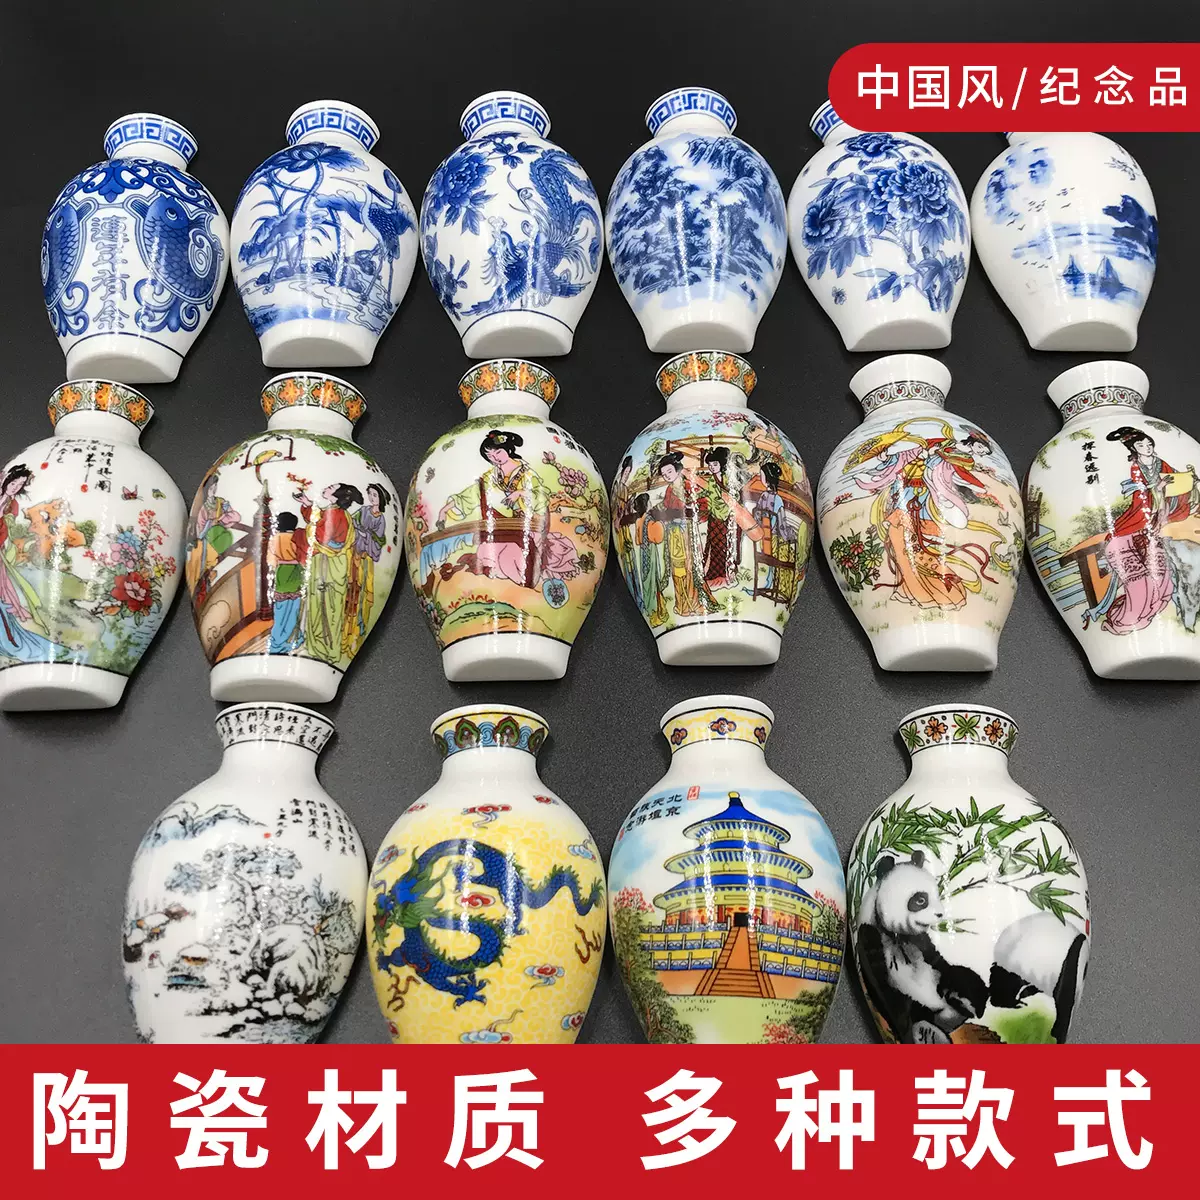 中国风陶瓷青花瓷花瓶冰箱贴纪念品家居饰品商务送老外礼品磁铁-Taobao